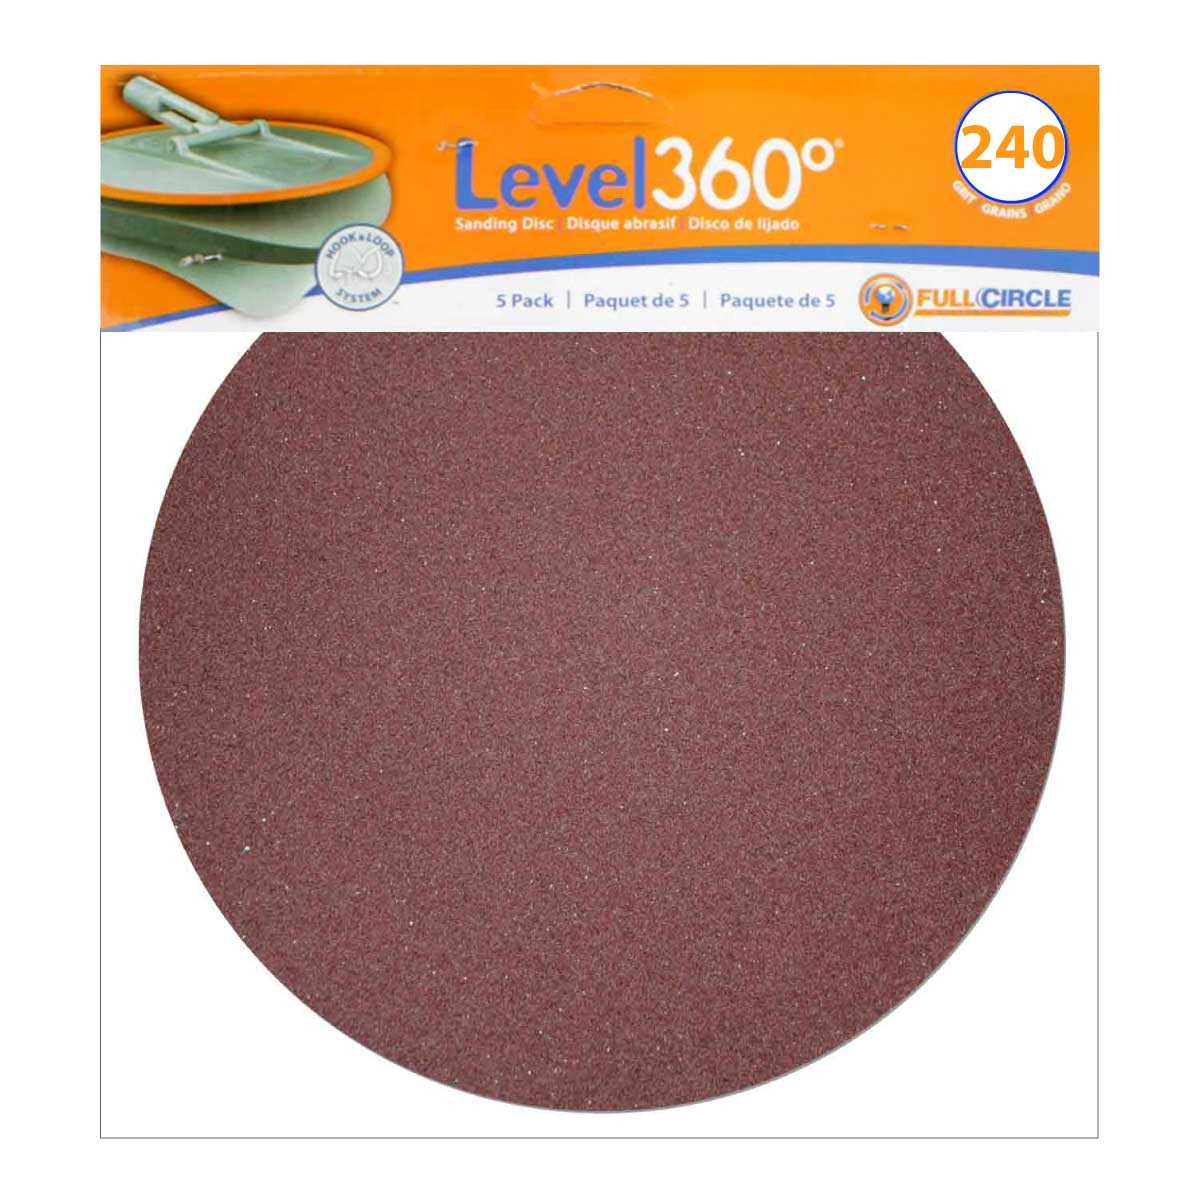 Level 360 Sanding Discs 240